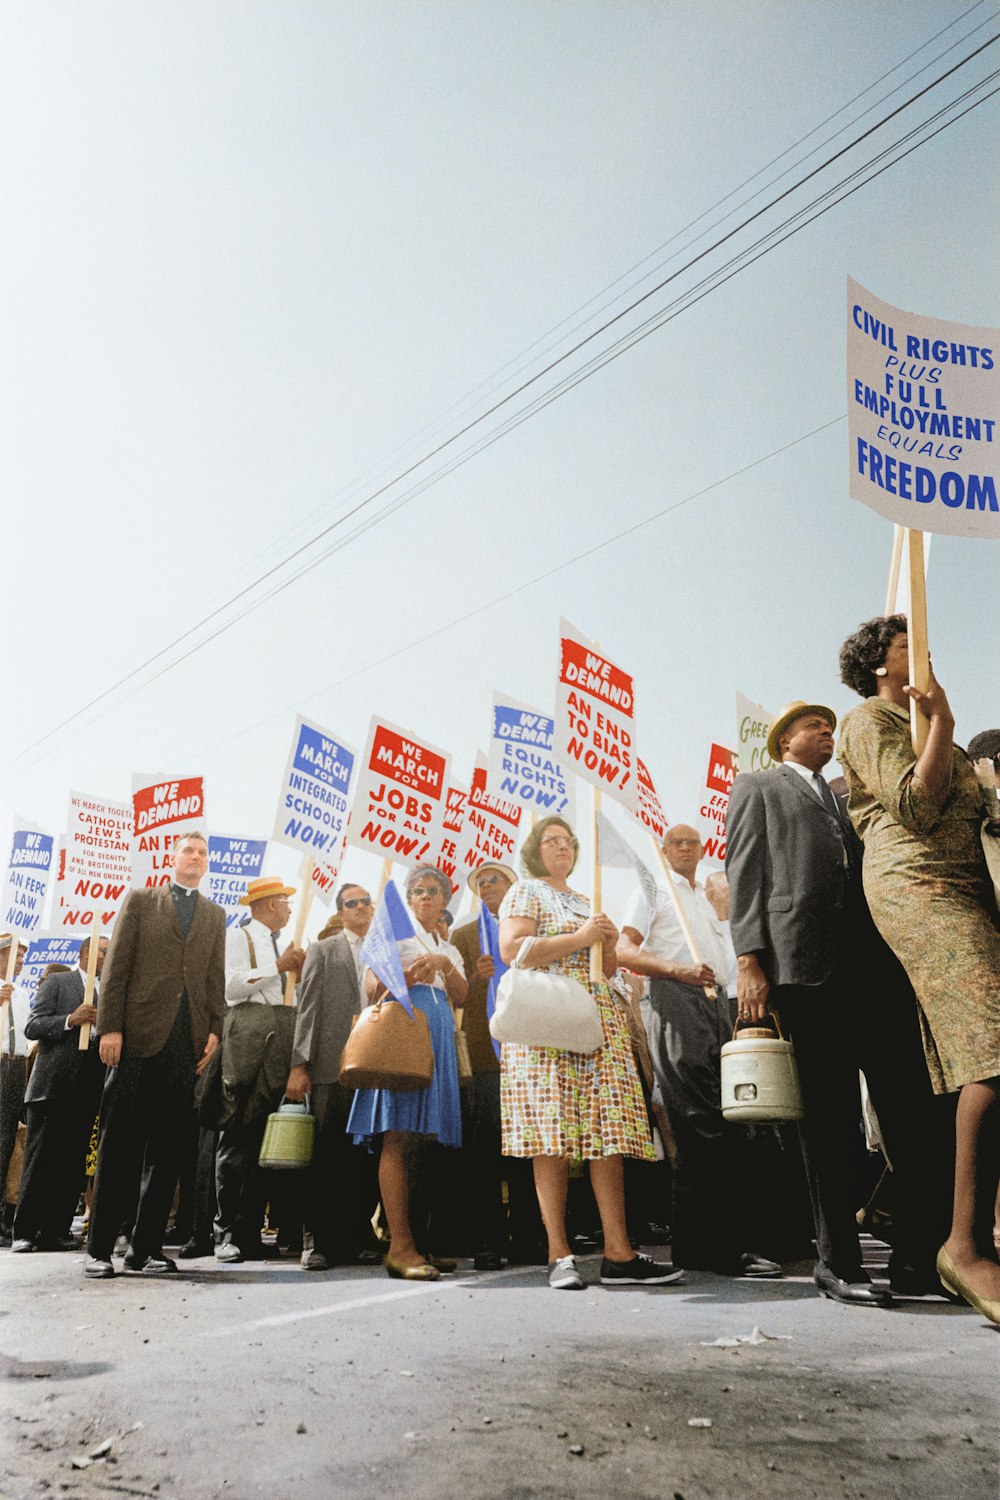 Manifestantes segurando cartazes exigindo o direito de voto e direitos civis iguais na Marcha sobre Washington